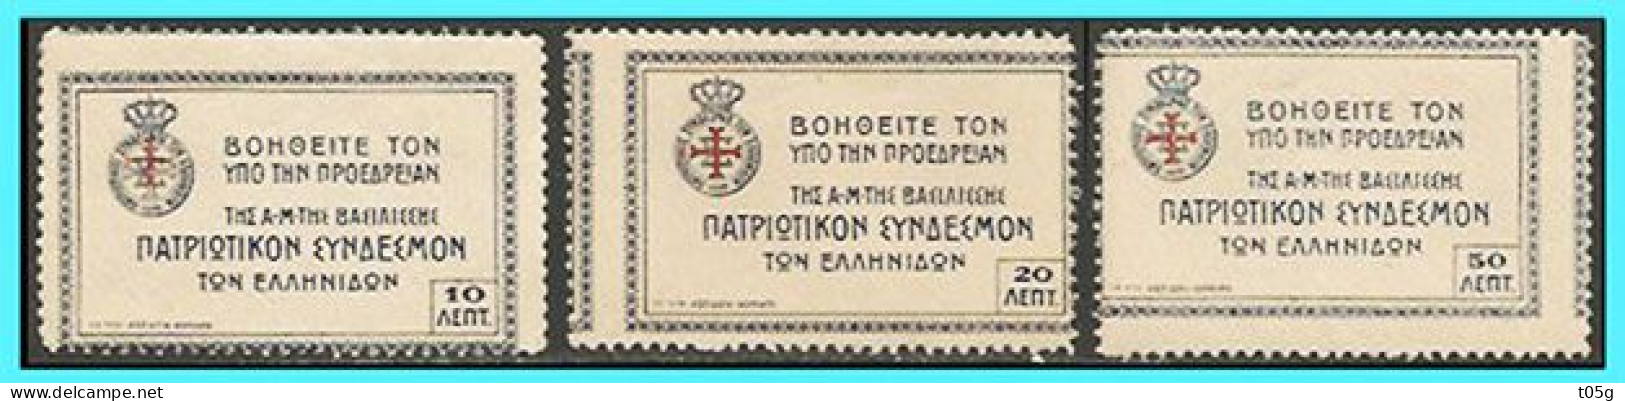 GREECE- GRECE- HELLAS  1915:Error Perforation   " Greek Wommen"s Patriotic League" Charity Stamps Compl. Set MNH**  "RR" - Bienfaisance